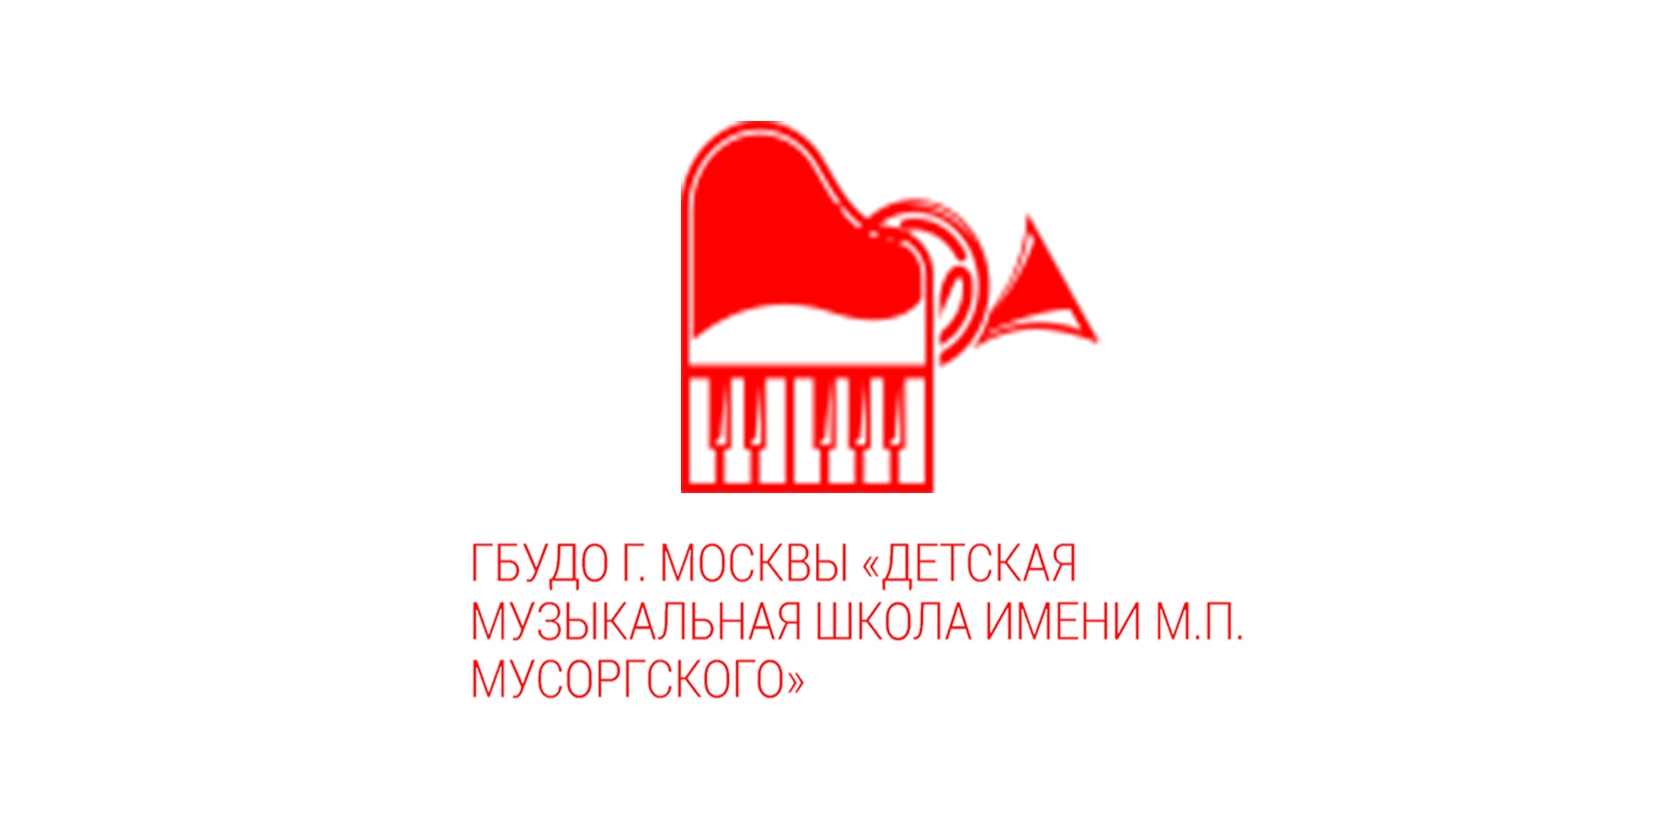 Государственное бюджетное учреждение дополнительного образования города Москвы "Детская музыкальная школа имени М.П. Мусоргского"